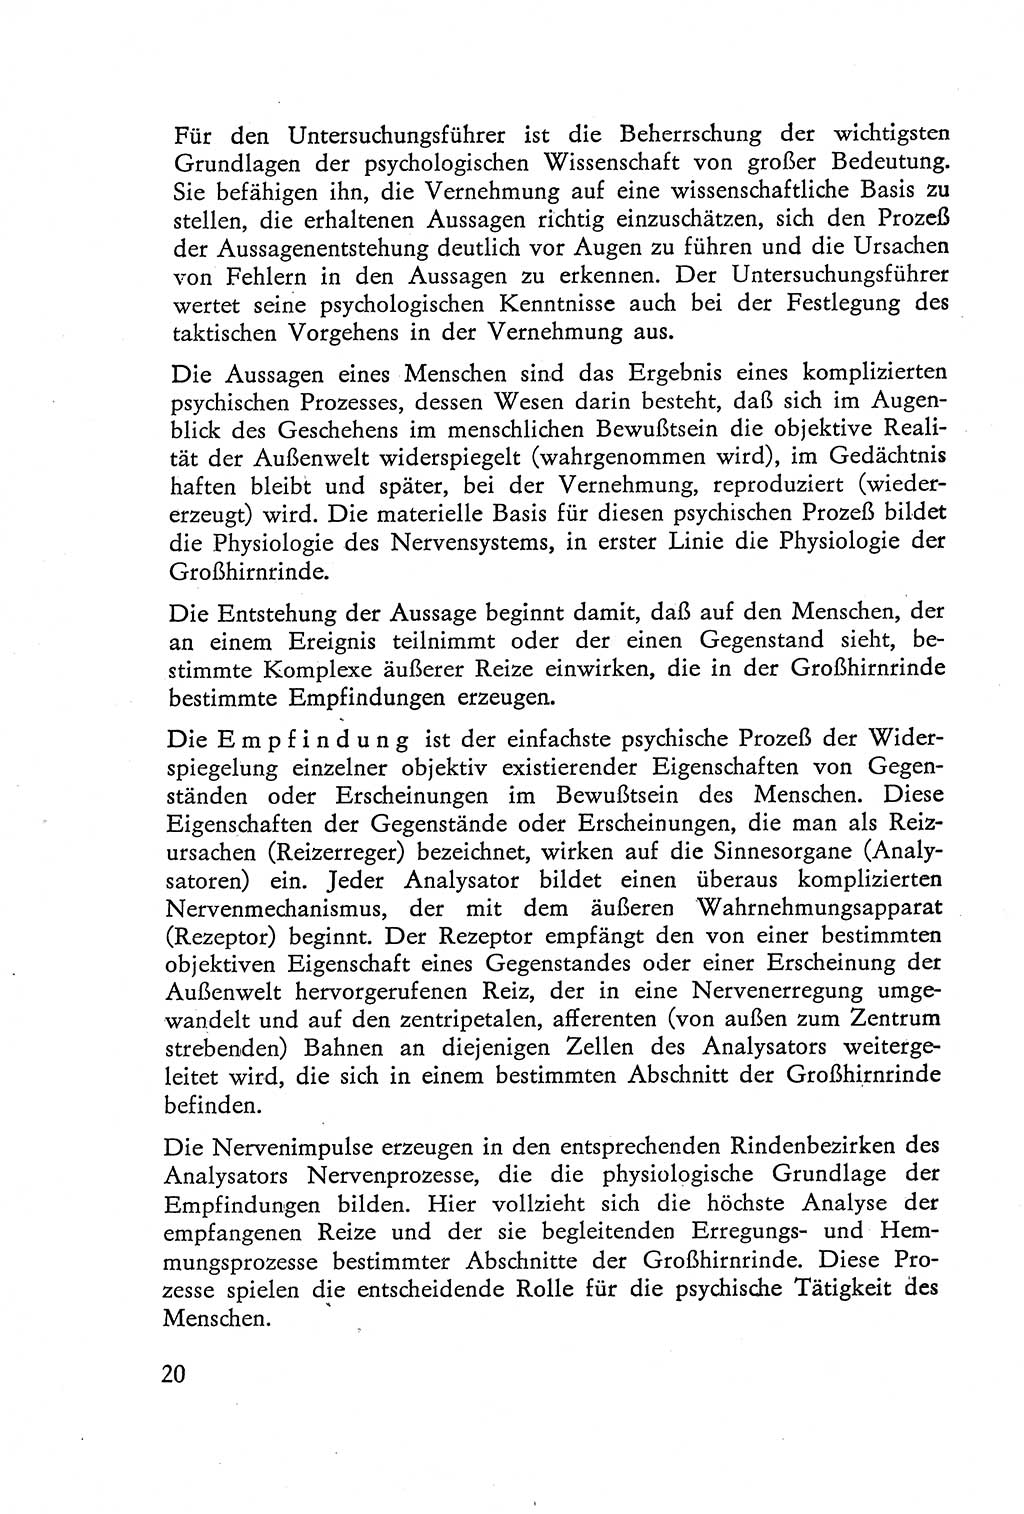 Die Vernehmung [Deutsche Demokratische Republik (DDR)] 1960, Seite 20 (Vern. DDR 1960, S. 20)